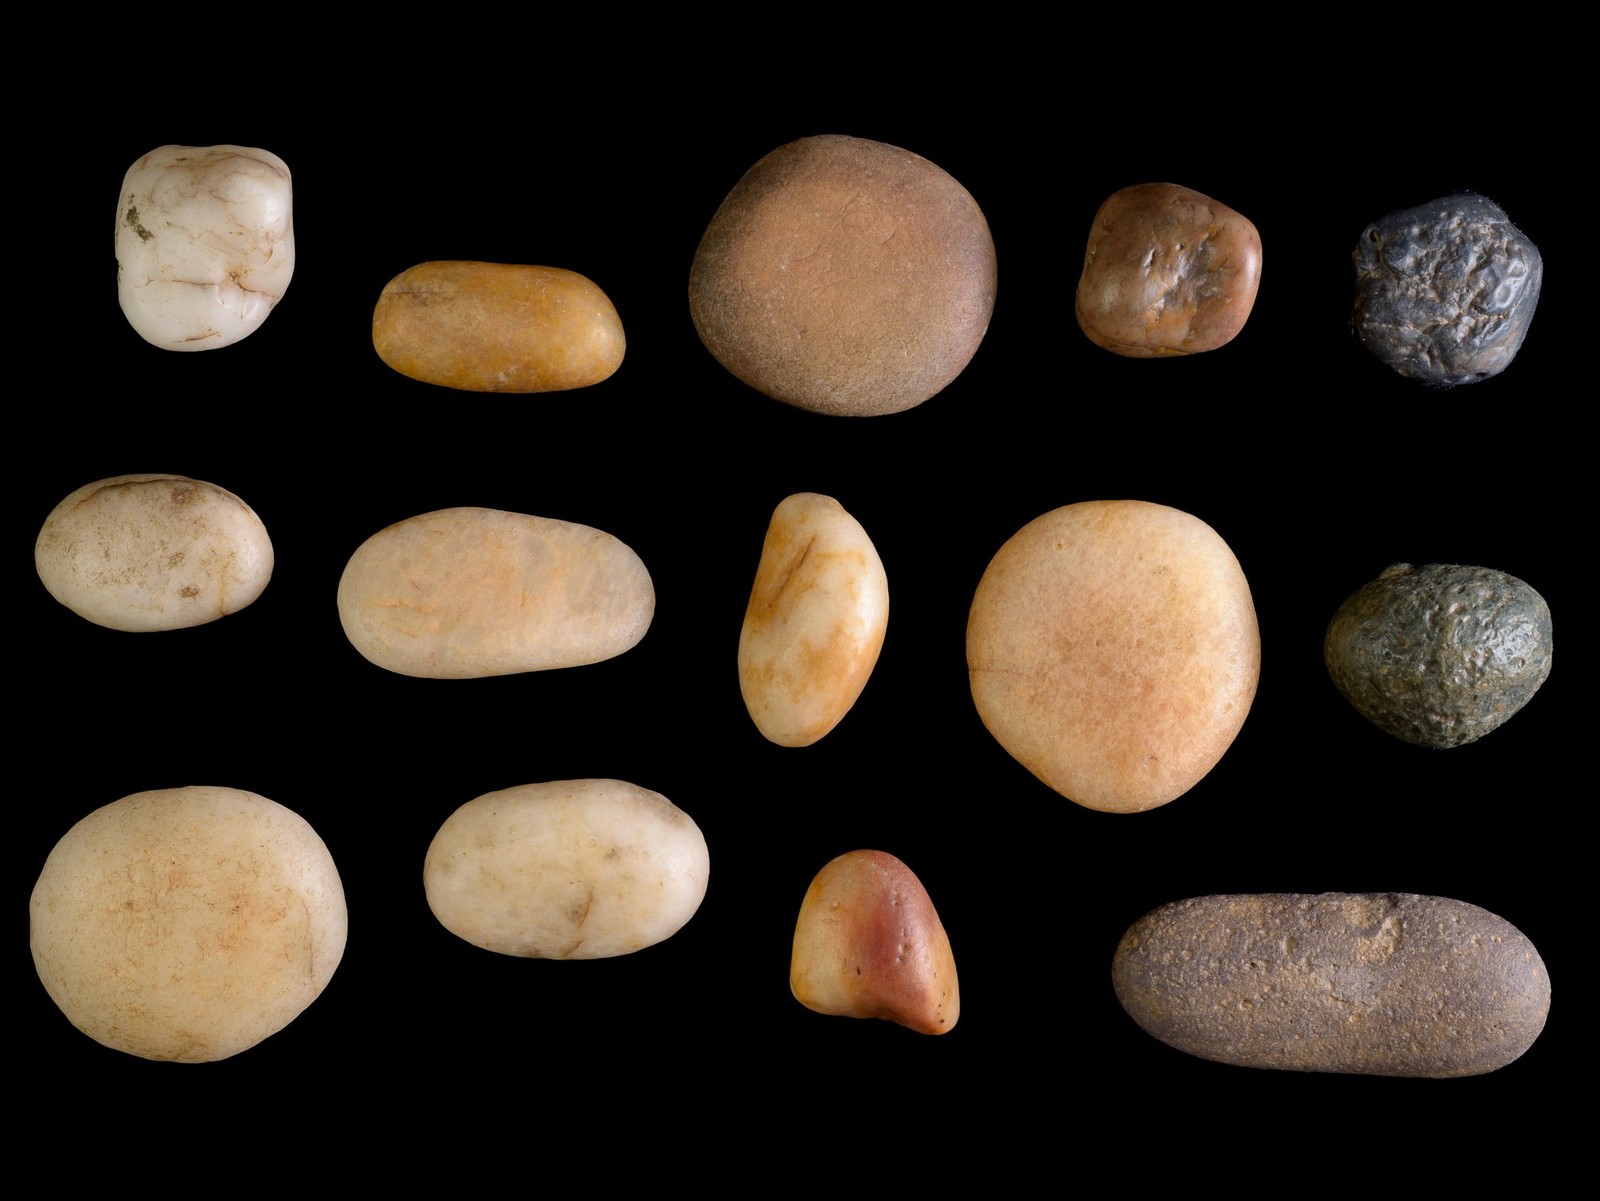 Pedras de quartzo coloridas — Foto: Clara Amit/Israel Antiquities Authority